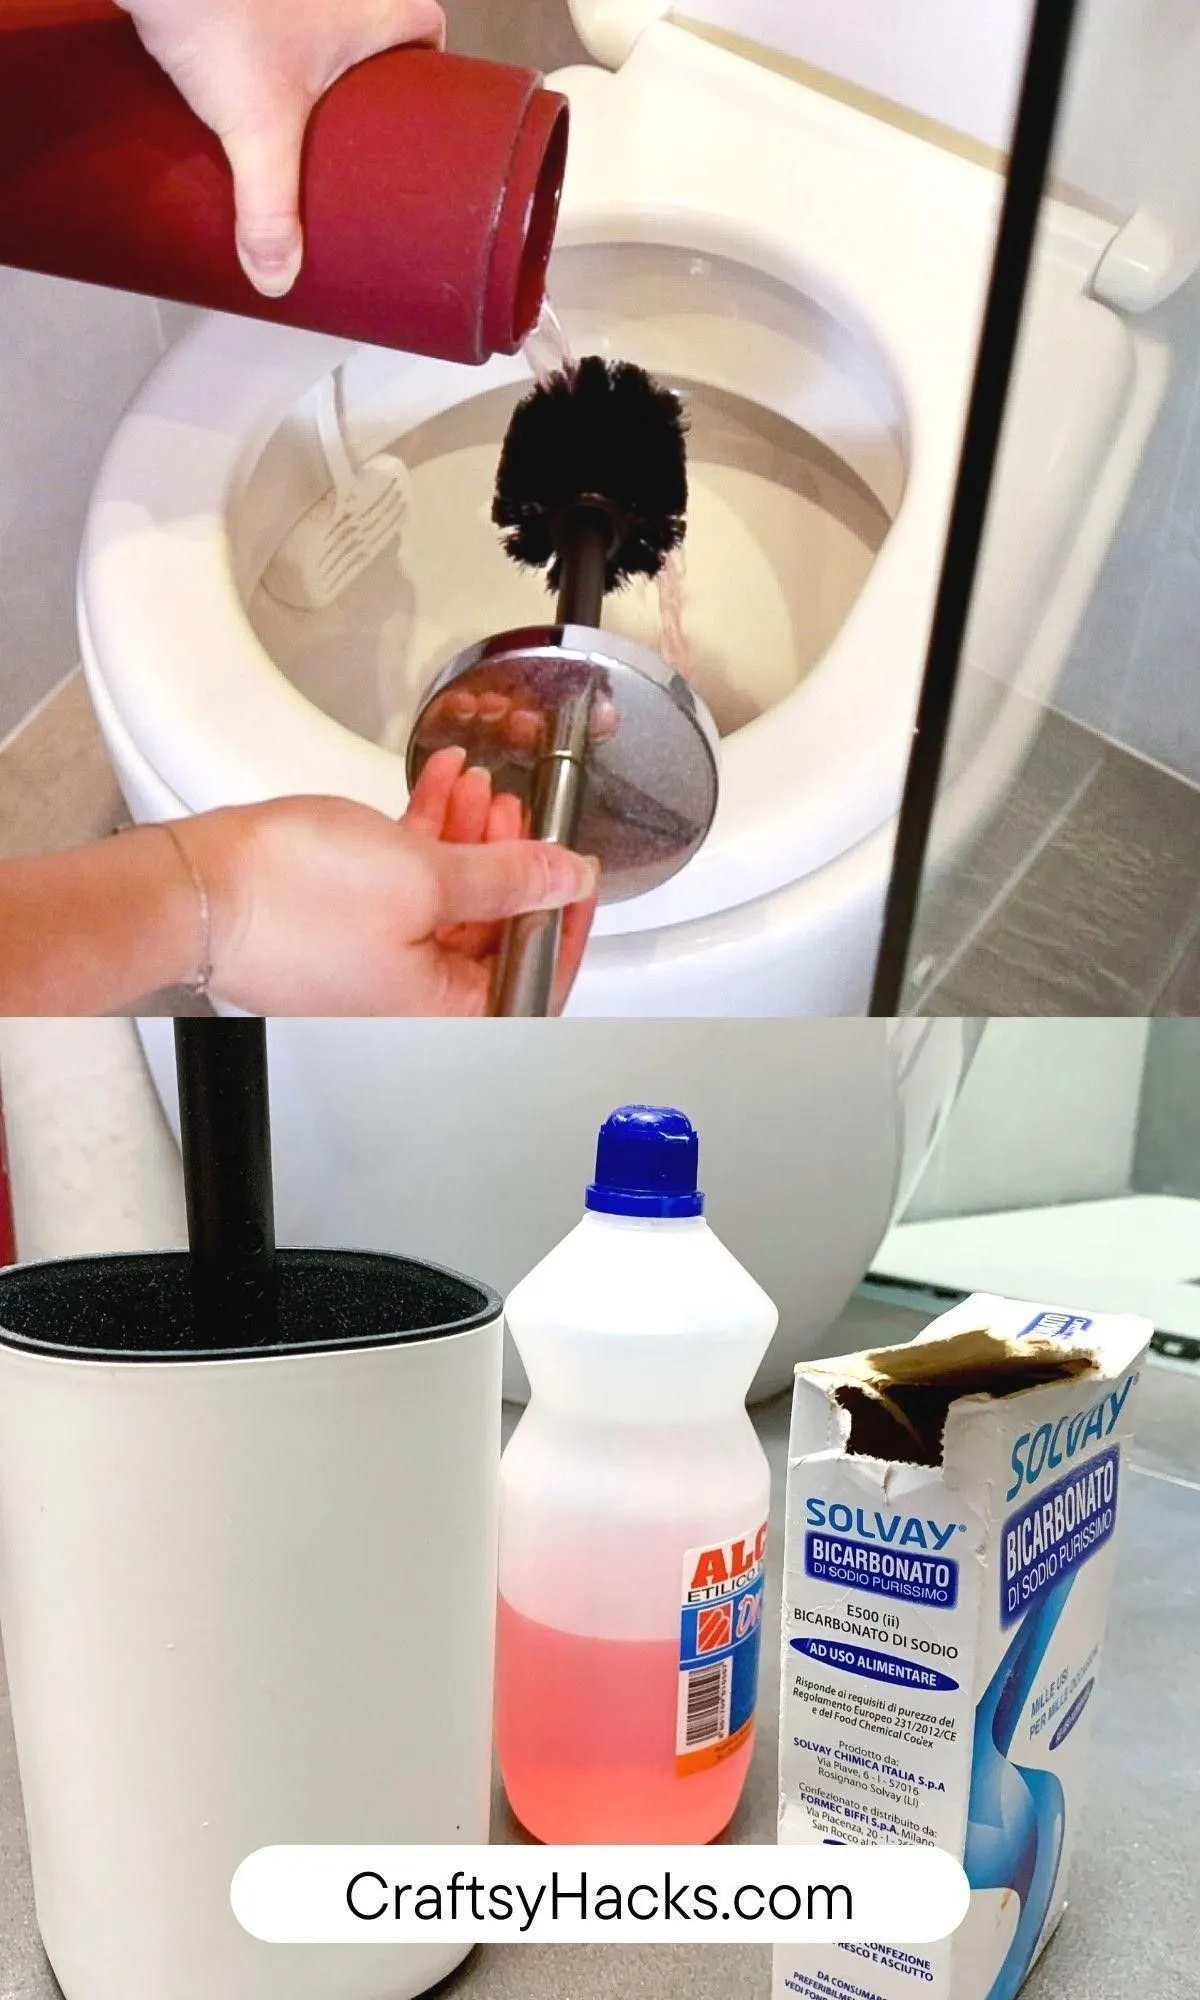 sanitize toilet brush with baking soda